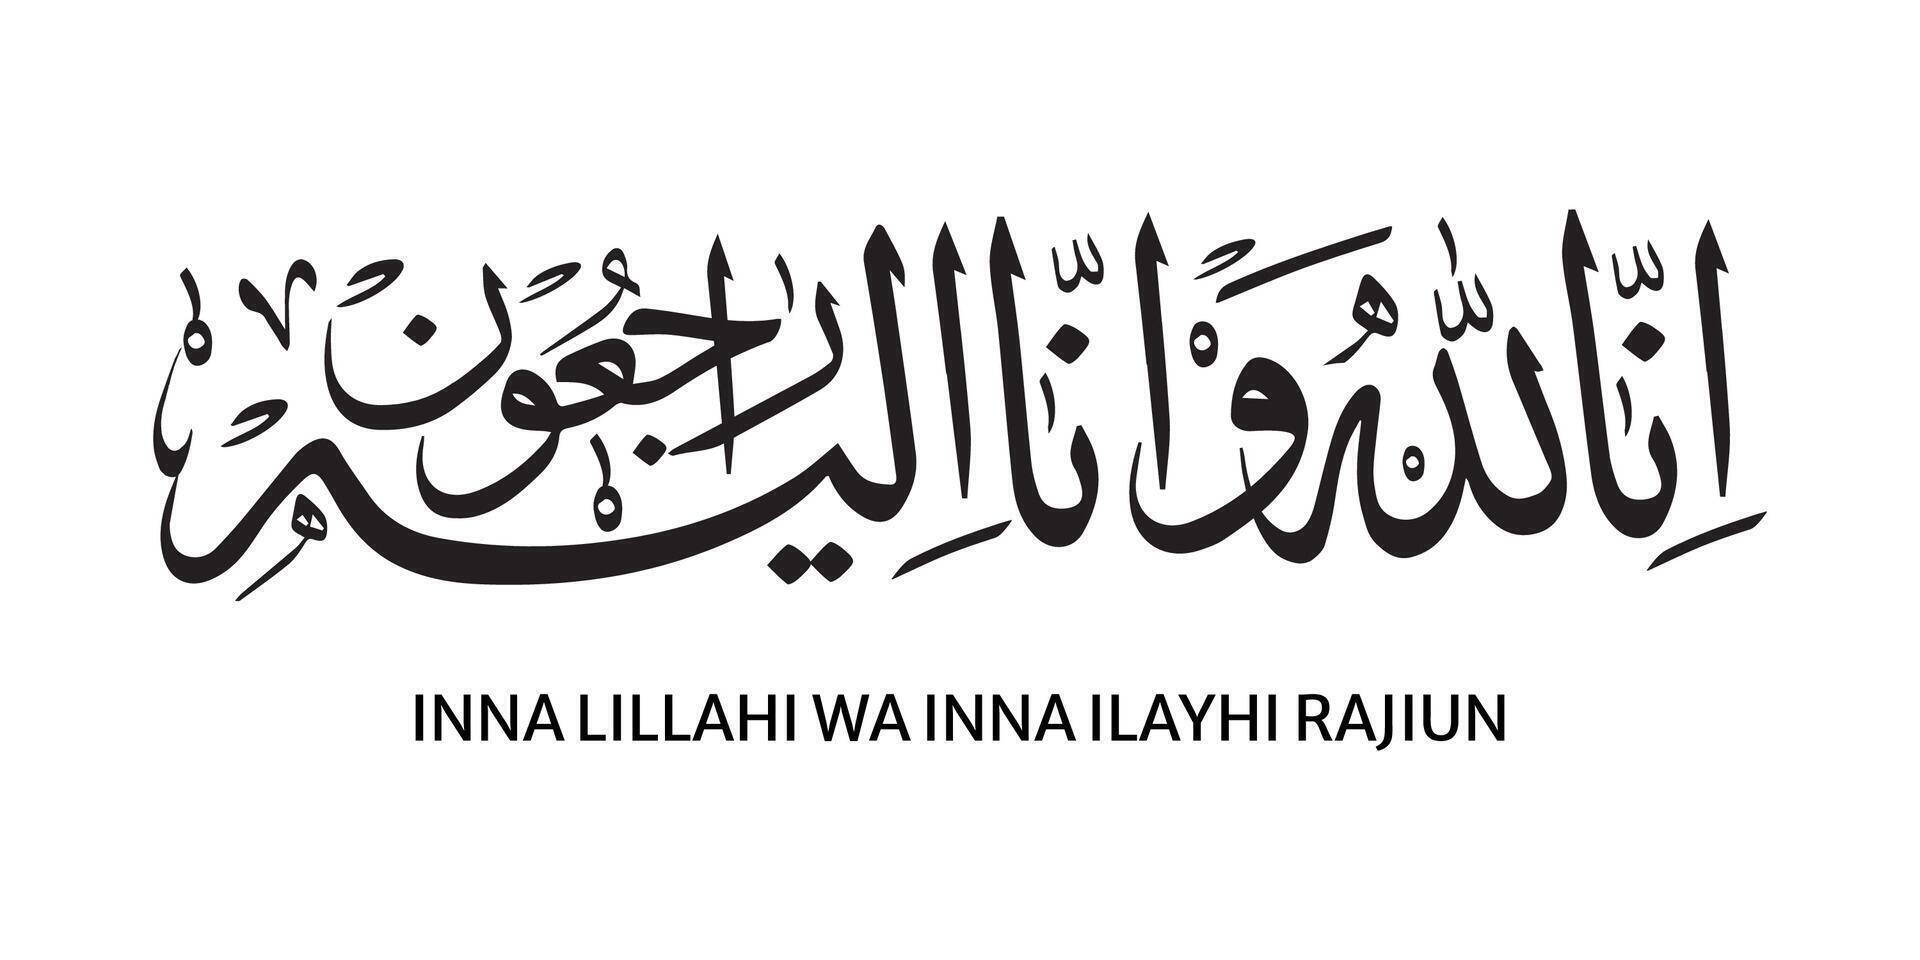 arabe calligraphie de inna lillahi Washington inna ilaihi Raji'un traditionnel et moderne islamique art pour du repos dans paix ou réussi une façon vecteur